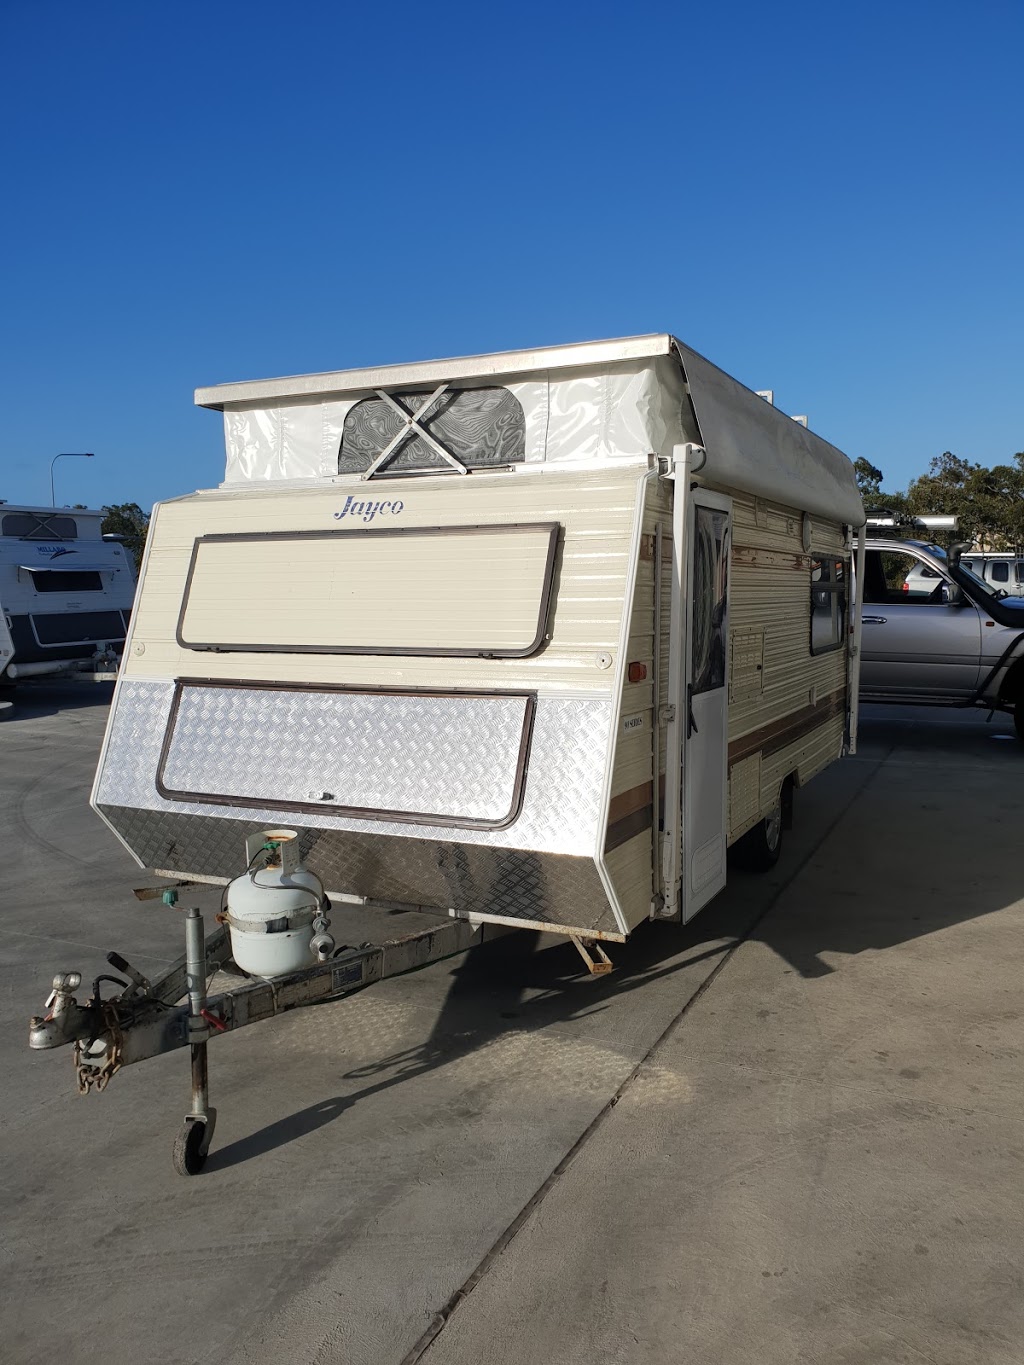 Man of Steel On-Site Caravan and Trailer Repairs | car repair | Shed 3/38 Southern Cross Circuit, Urangan QLD 4655, Australia | 0415829264 OR +61 415 829 264